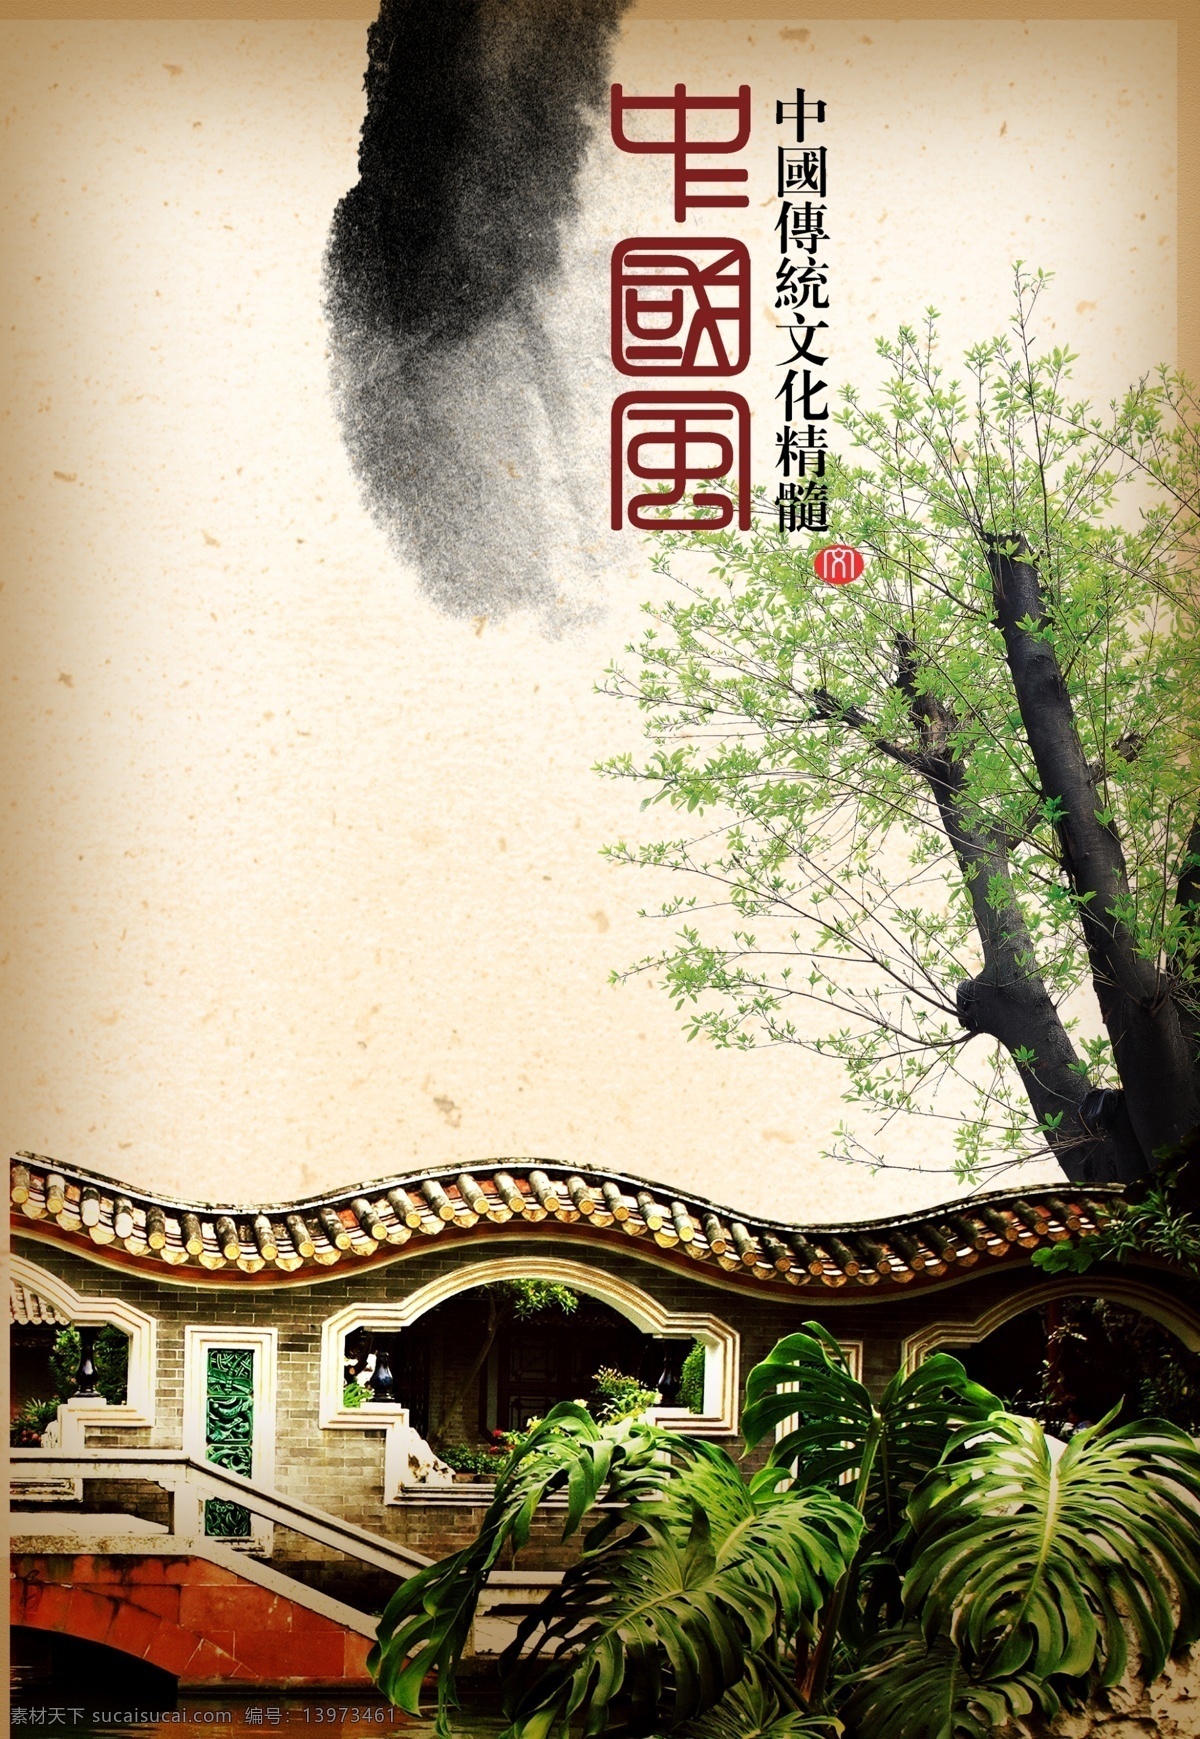 古式 庭院 设计素材 树木 水墨 小桥 宣纸 中国风 psd源文件